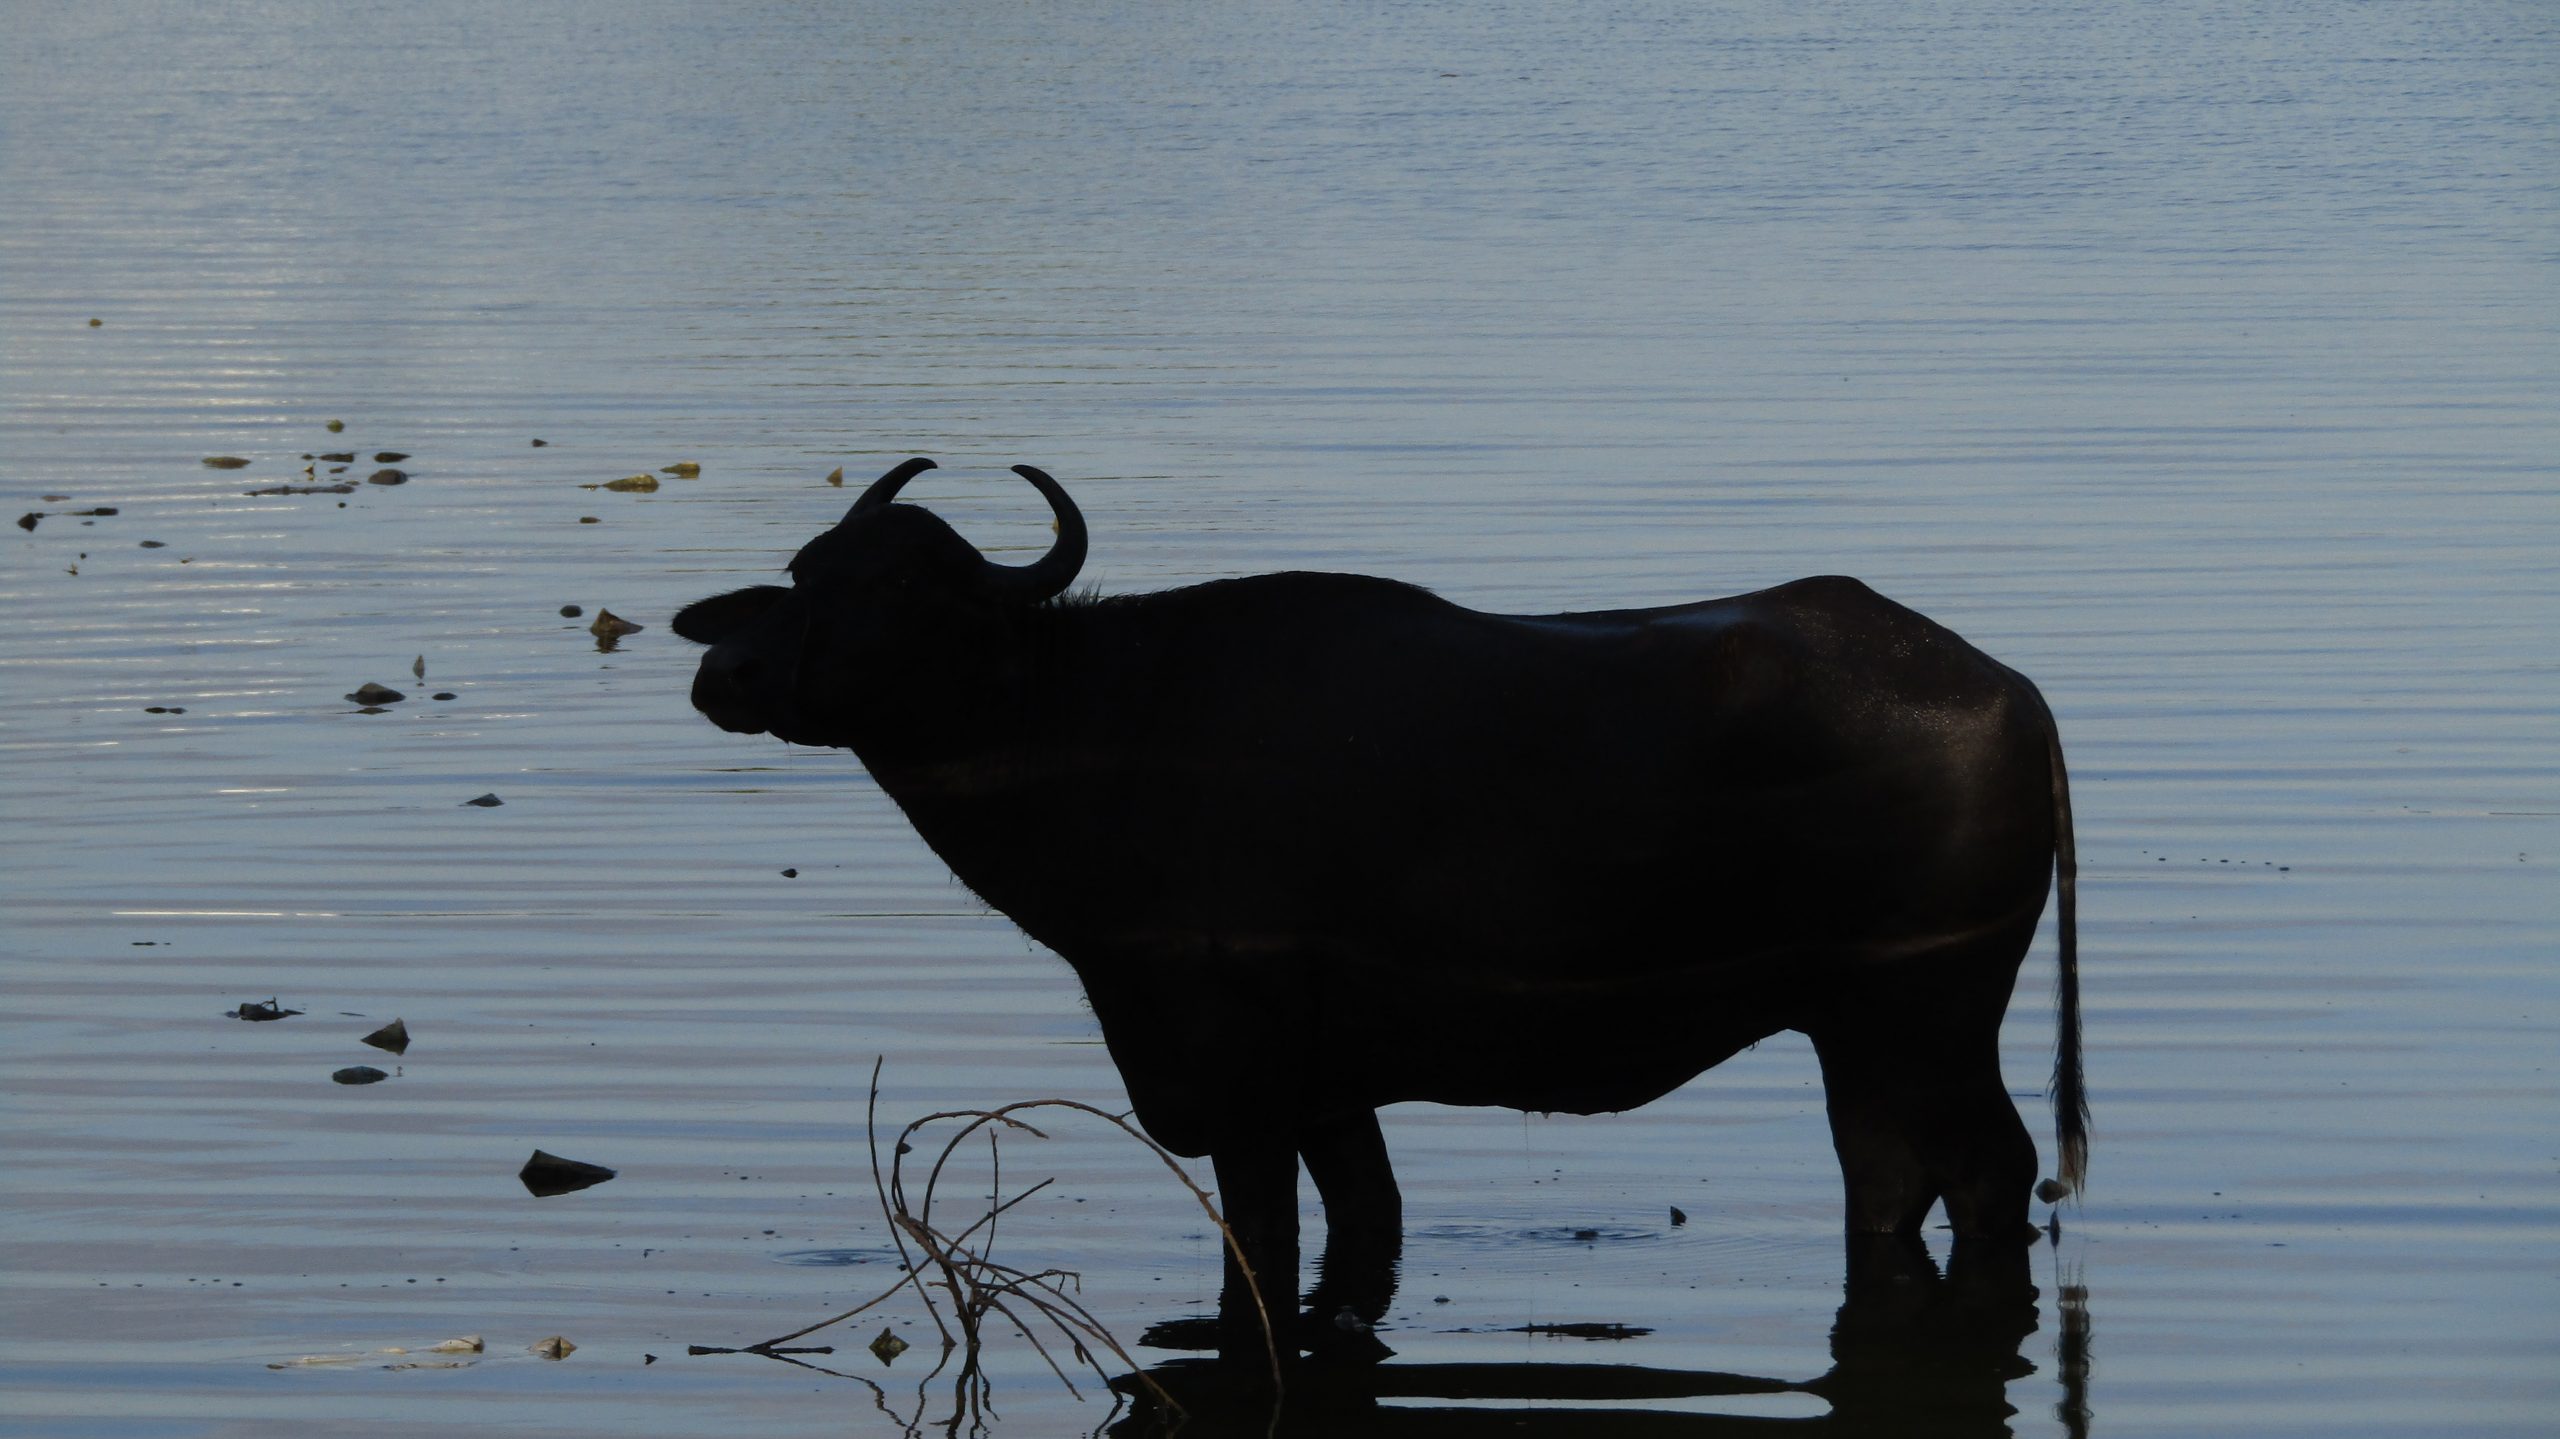 A buffalo taking bath in the lake.